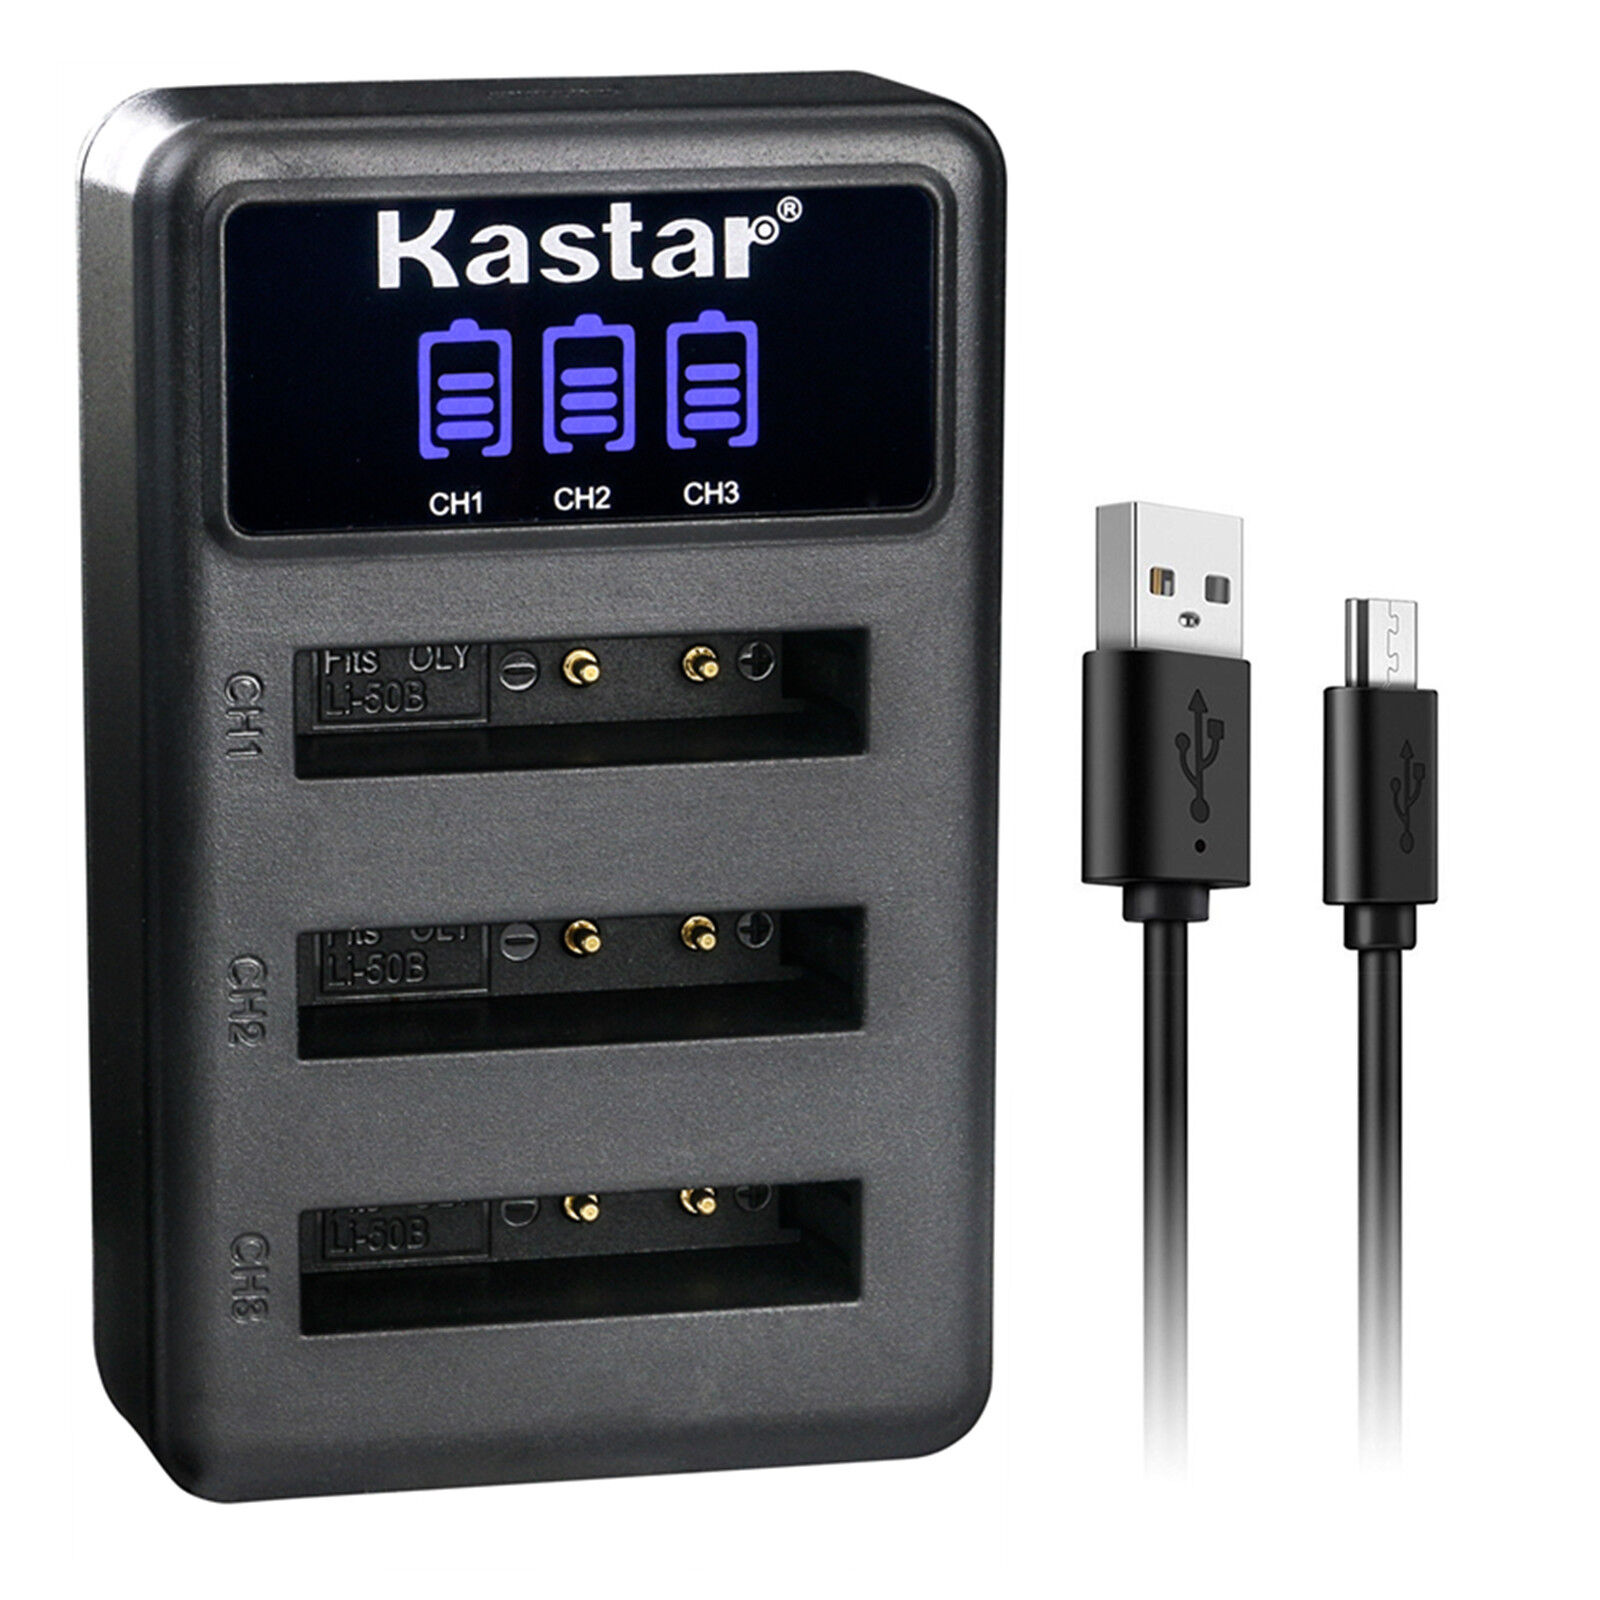 Kastar LCD Triple USB Battery Charger Compatible with Olympus Stylus 1030SW, Stylus 9000, Stylus 9010, SZ-10, SZ-11, SZ-12, SZ-14, SZ-15, SZ-16, SZ-20, SZ-25MR, SZ-30MR, SZ-31MR his - image 1 of 5